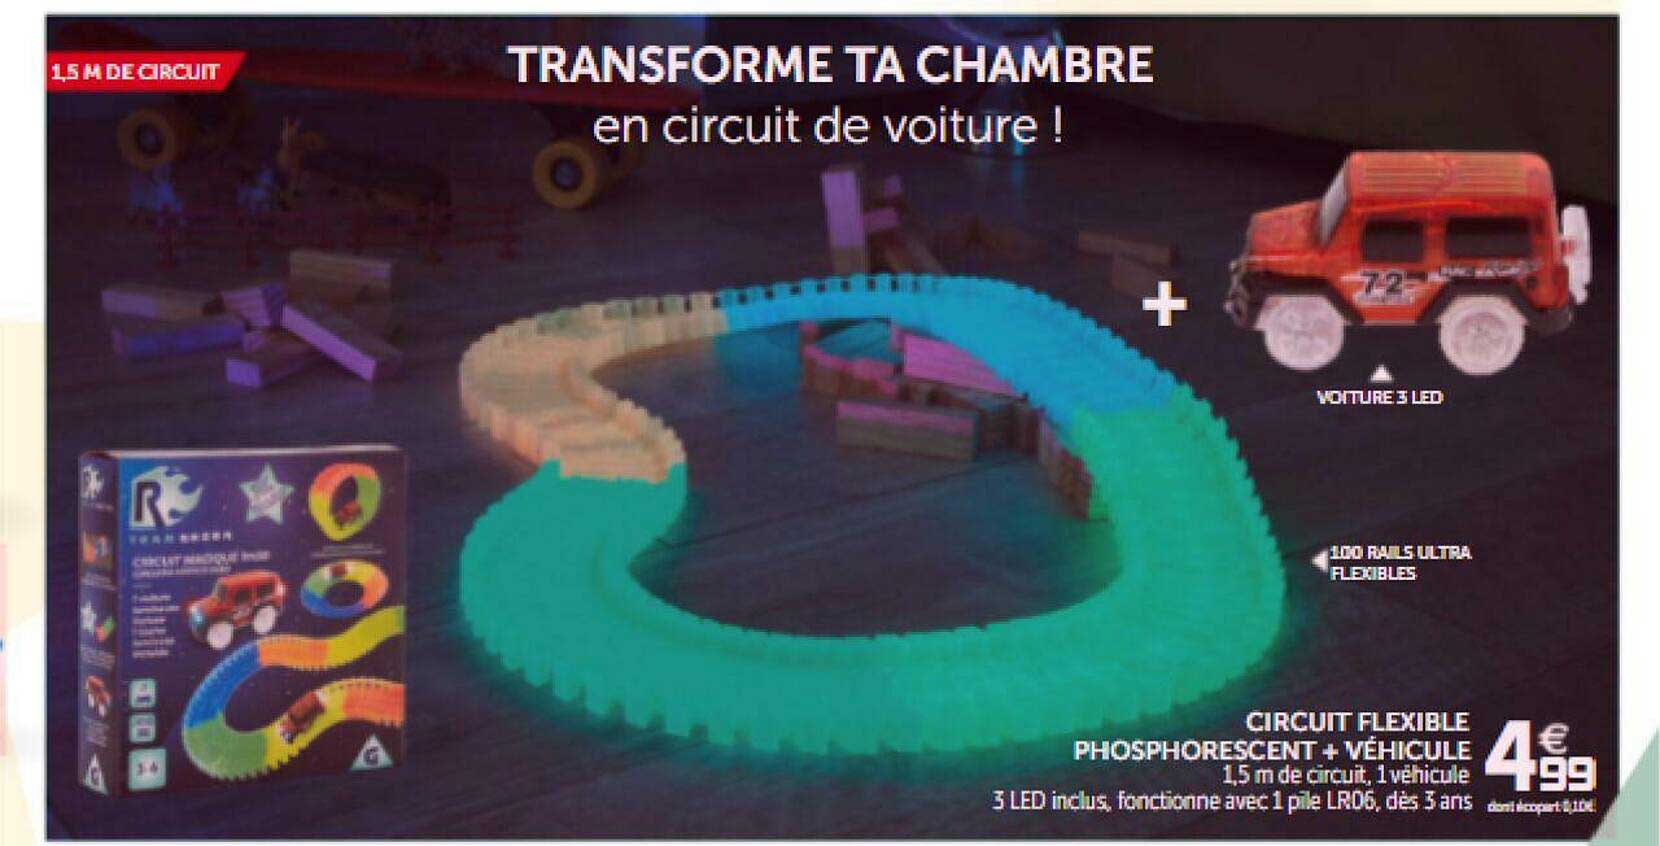 Promo Circuit Flexible Phosphorescent chez Gifi